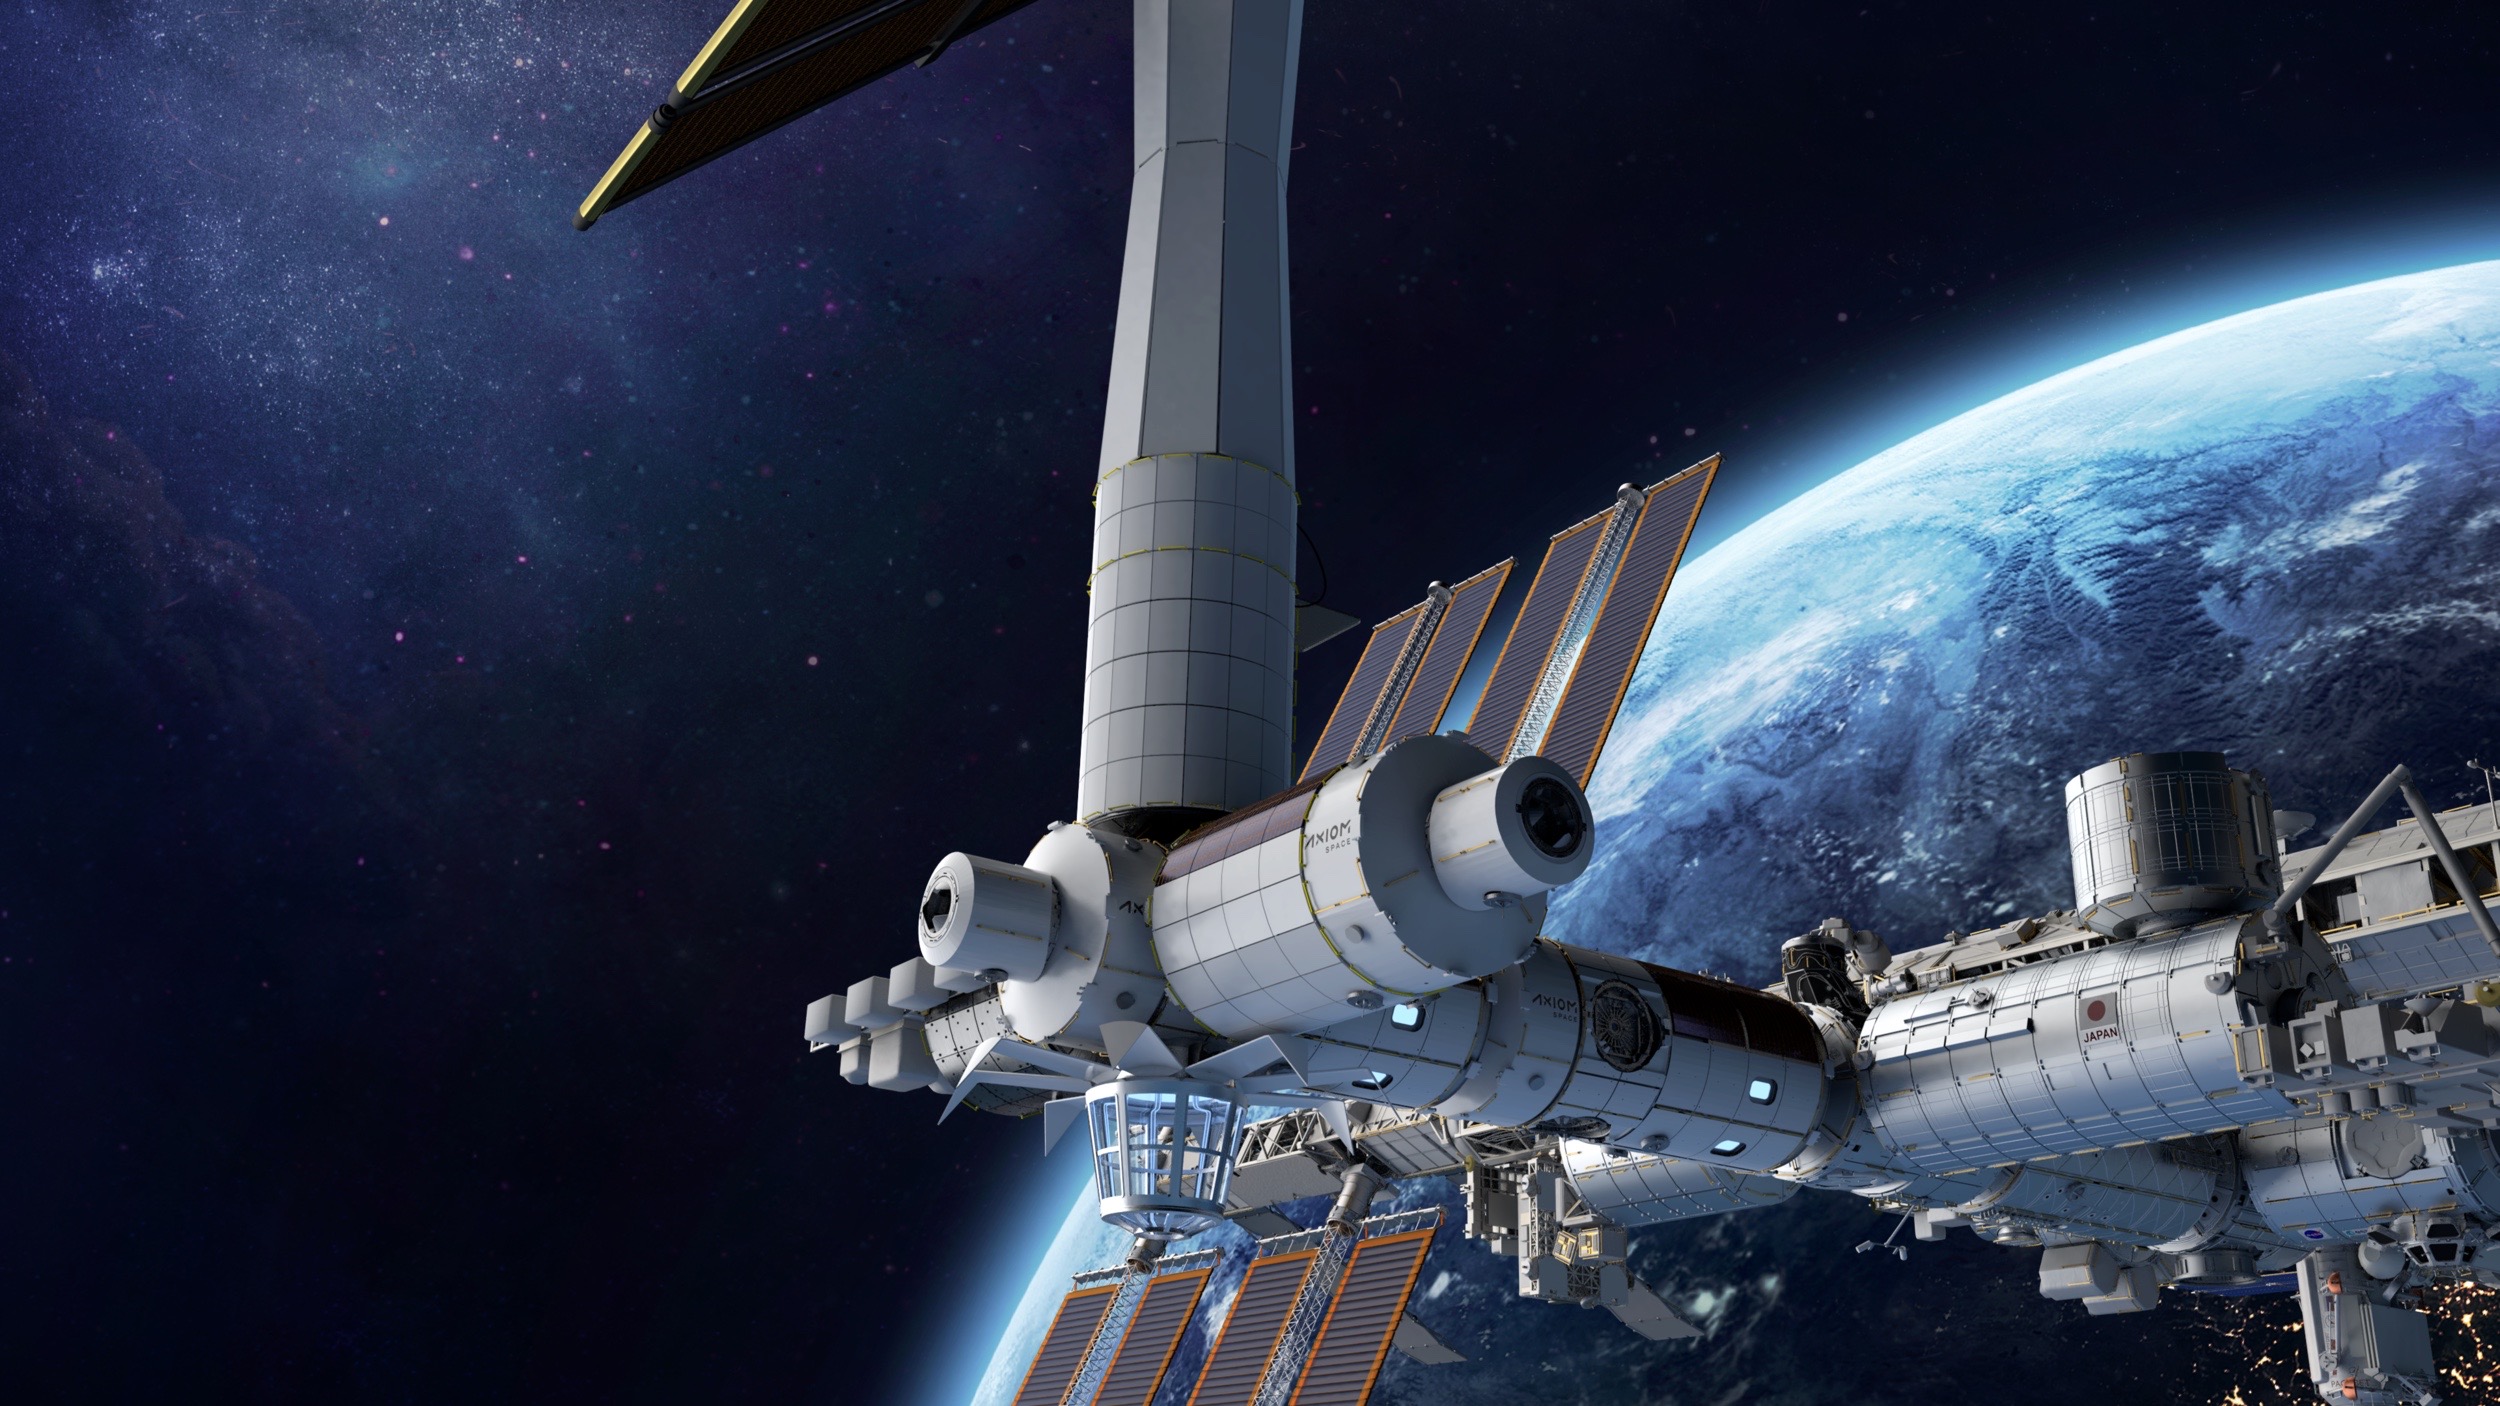 Hình minh họa của một nghệ sĩ về trạm vũ trụ mà Axiom Space có trụ sở tại Houston dự định xây dựng trên quỹ đạo Trái đất.